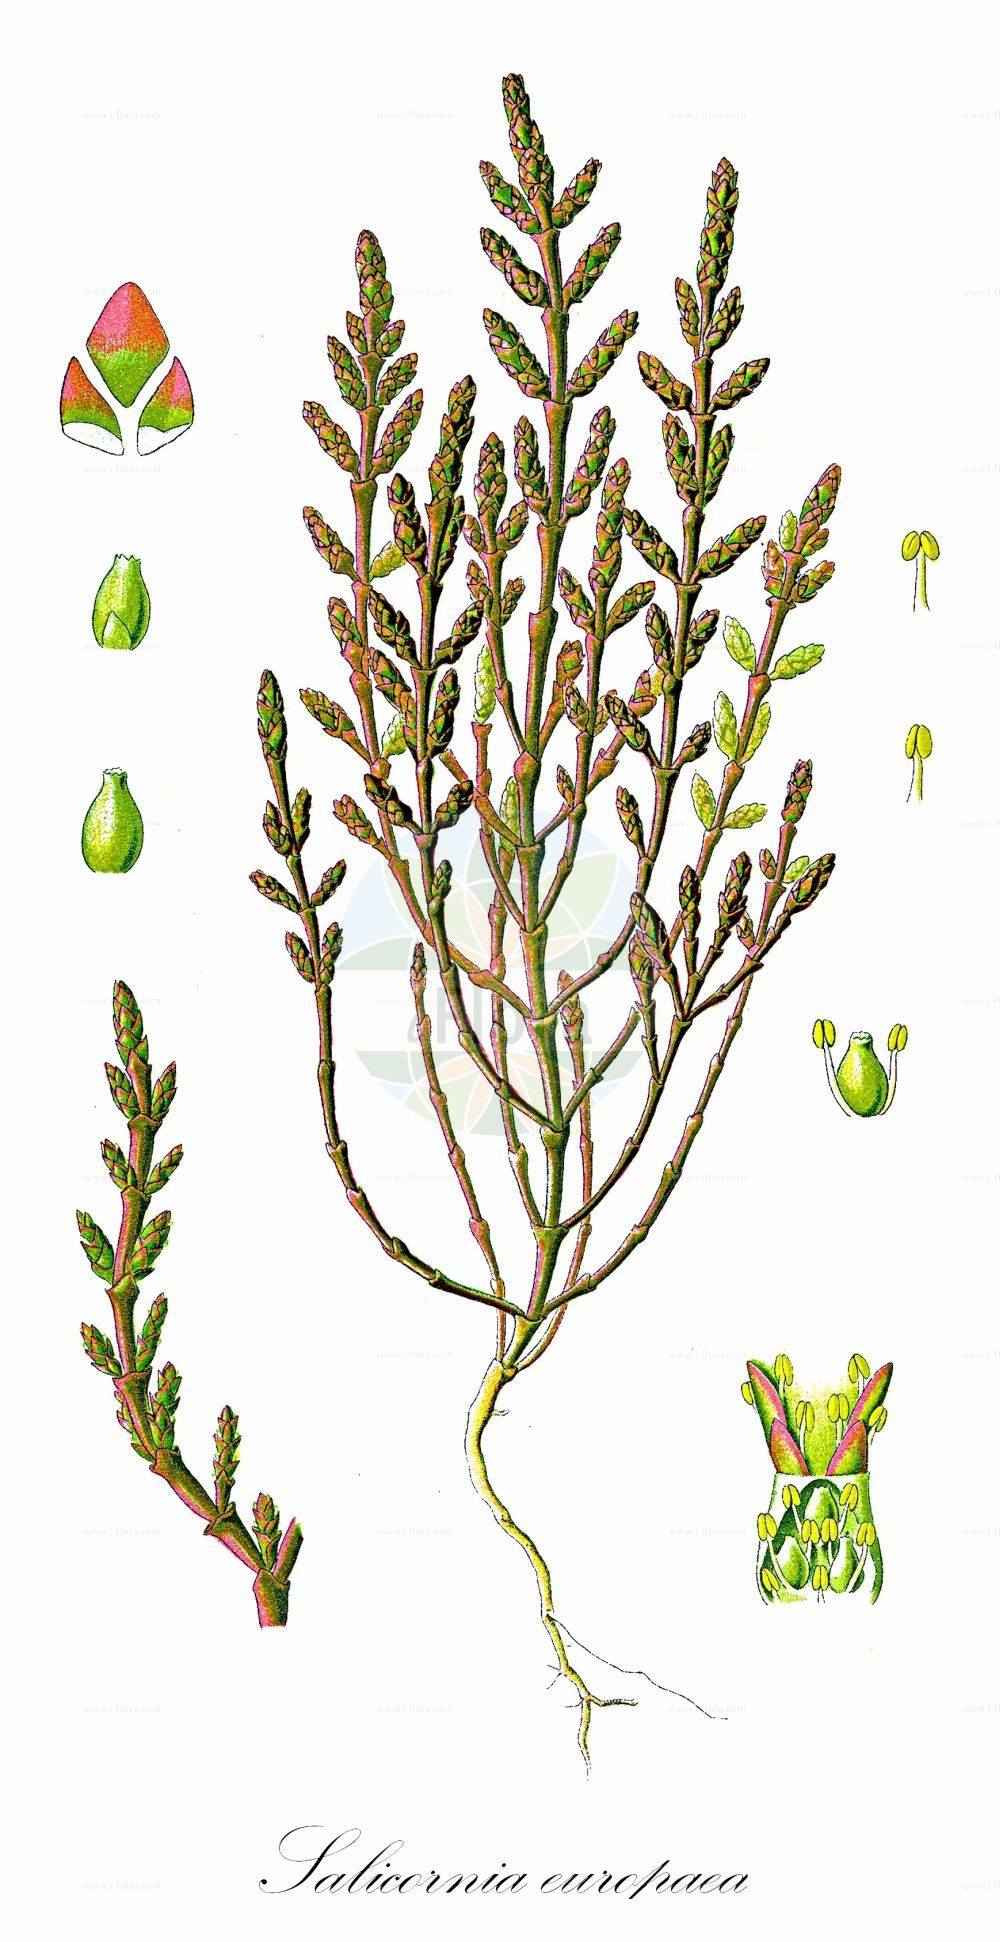 Historische Abbildung von Salicornia europaea (Europäischer Queller - Common Glasswort). Das Bild zeigt Blatt, Bluete, Frucht und Same. ---- Historical Drawing of Salicornia europaea (Europäischer Queller - Common Glasswort). The image is showing leaf, flower, fruit and seed.(Salicornia europaea,Europäischer Queller,Common Glasswort,Salicornia annua,Salicornia europaea,Salicornia herbacea,Europaeischer Queller,Gewoehnlicher Queller,Kurzaehren-Queller,Queller,Common Glasswort,Purple Glasswort,Glaucous Glasswort,Red Swampfire,Slender Grasswort,Salicornia,Queller,Glassworts,Amaranthaceae,Fuchsschwanzgewächse,Pigweed family,Blatt,Bluete,Frucht,Same,leaf,flower,fruit,seed,Thomé (1885))